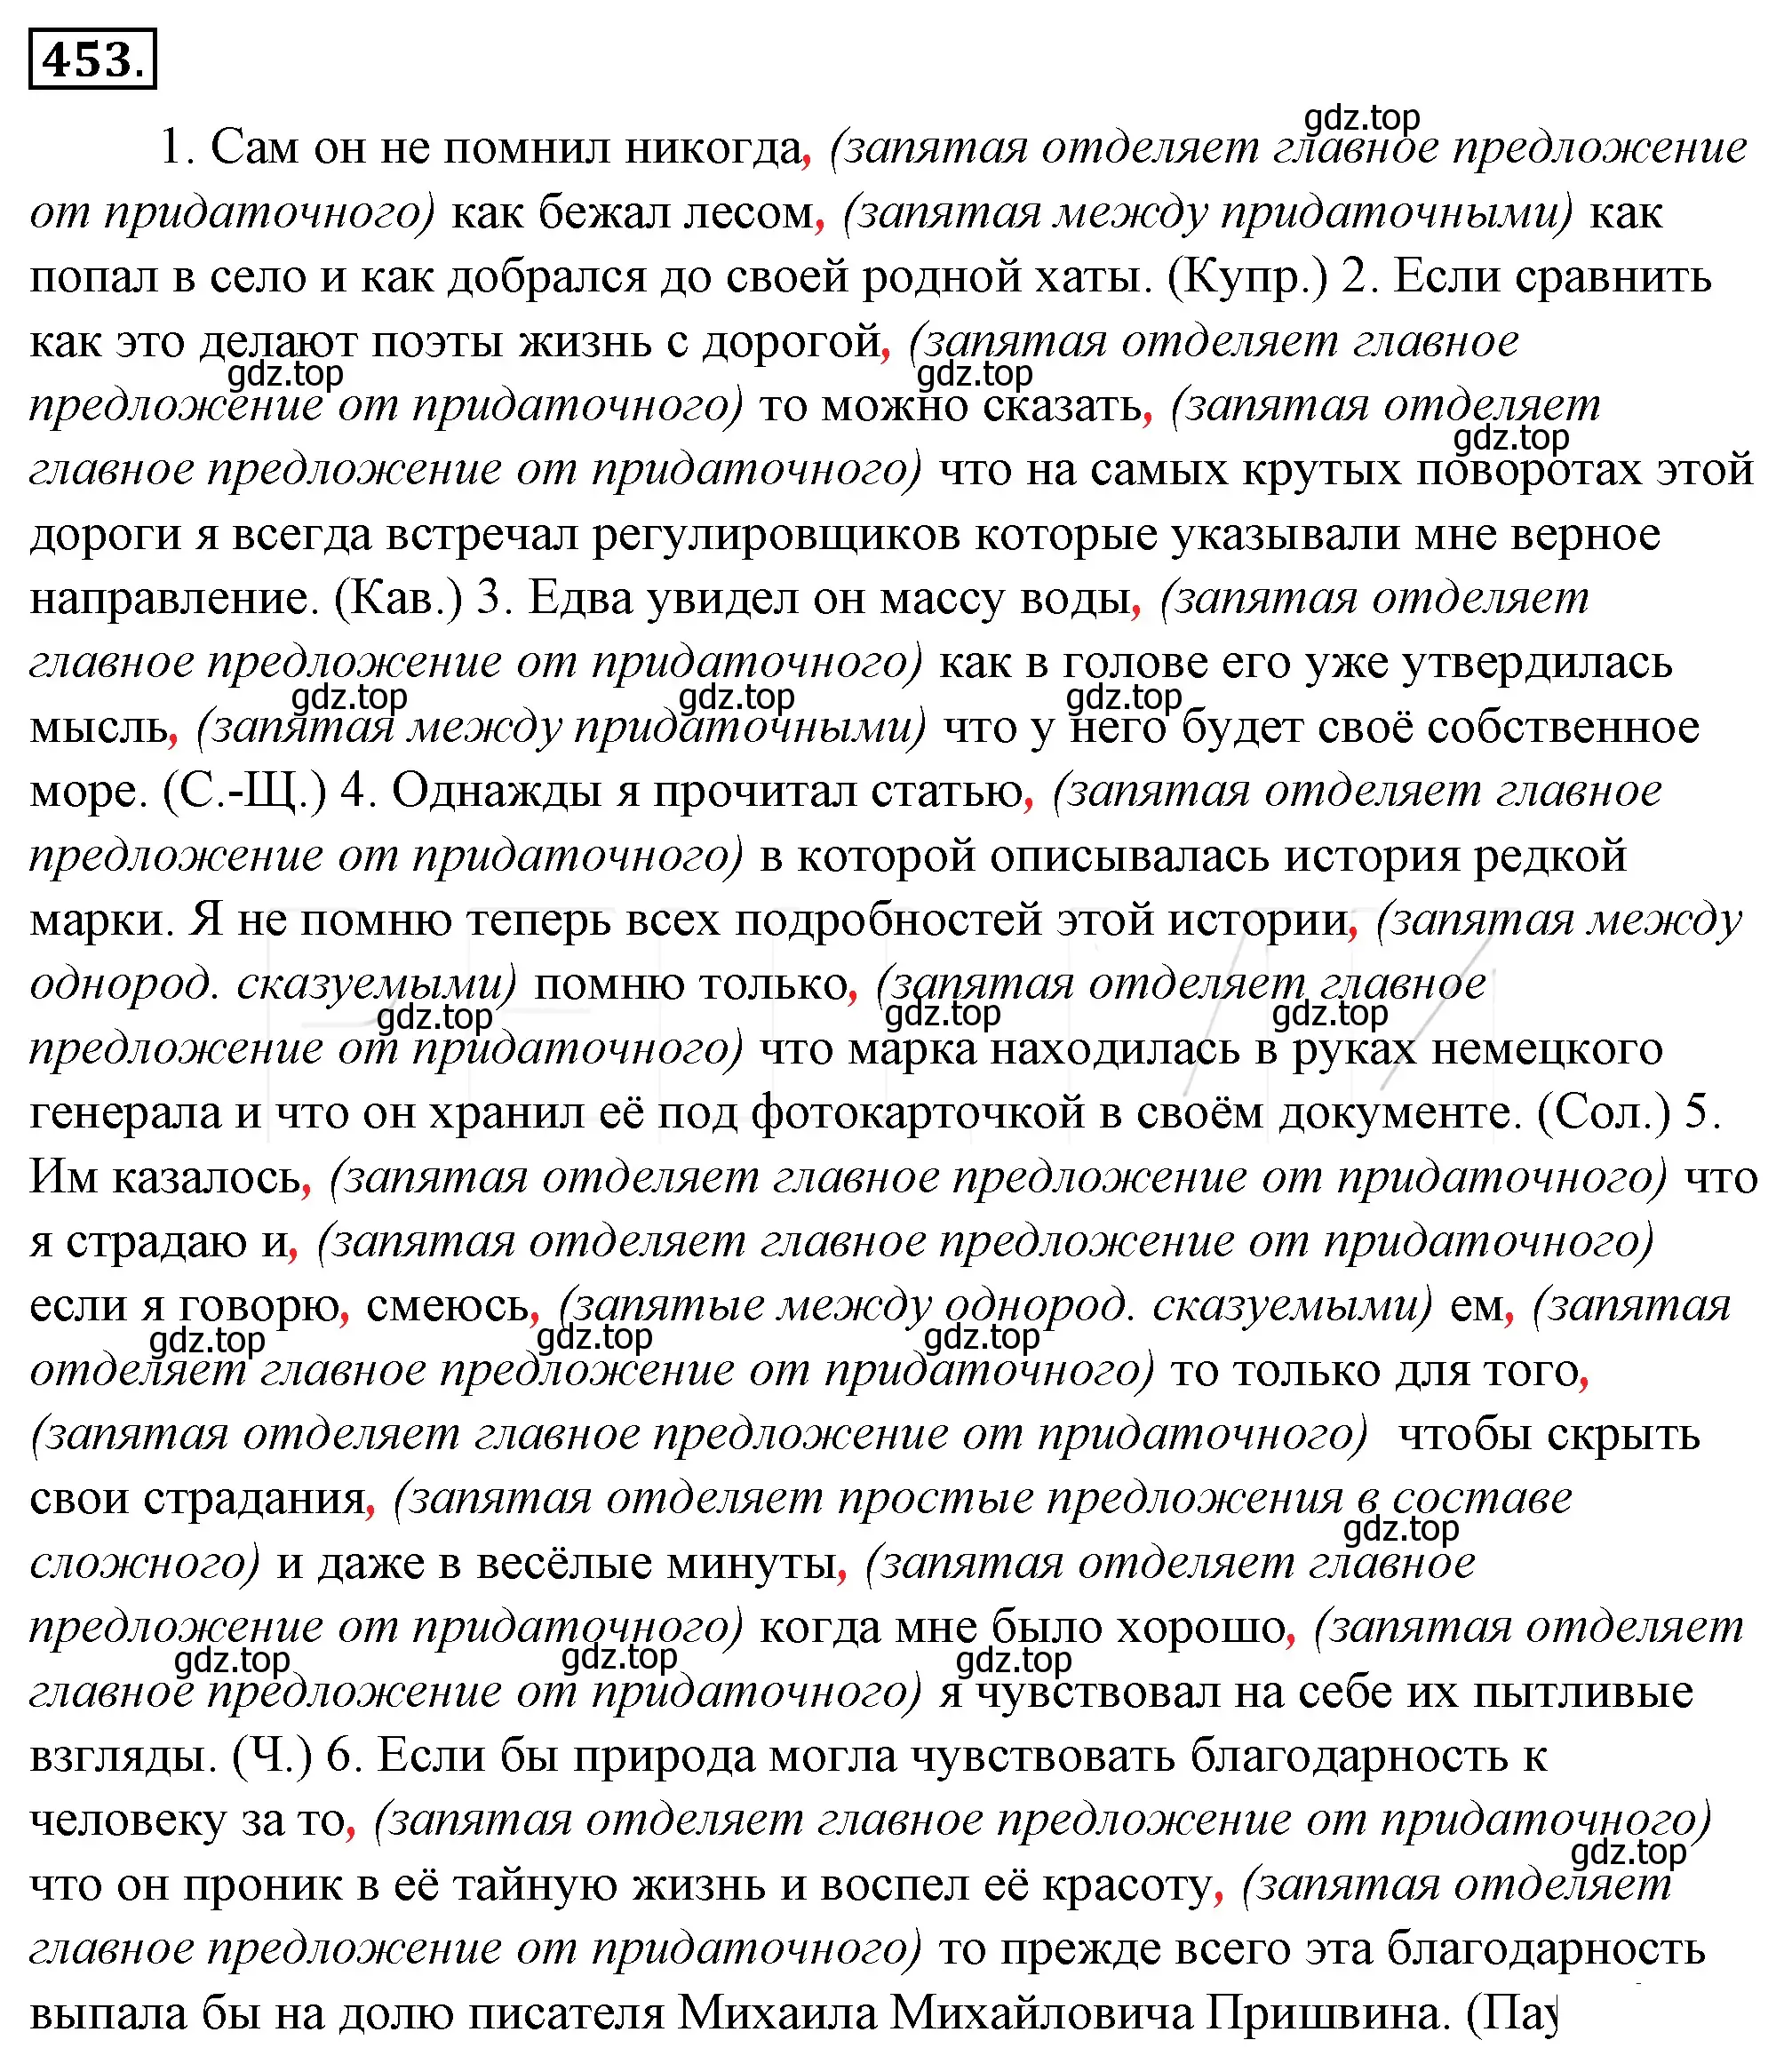 Решение 4. номер 118 (страница 164) гдз по русскому языку 10-11 класс Гольцова, Шамшин, учебник 2 часть